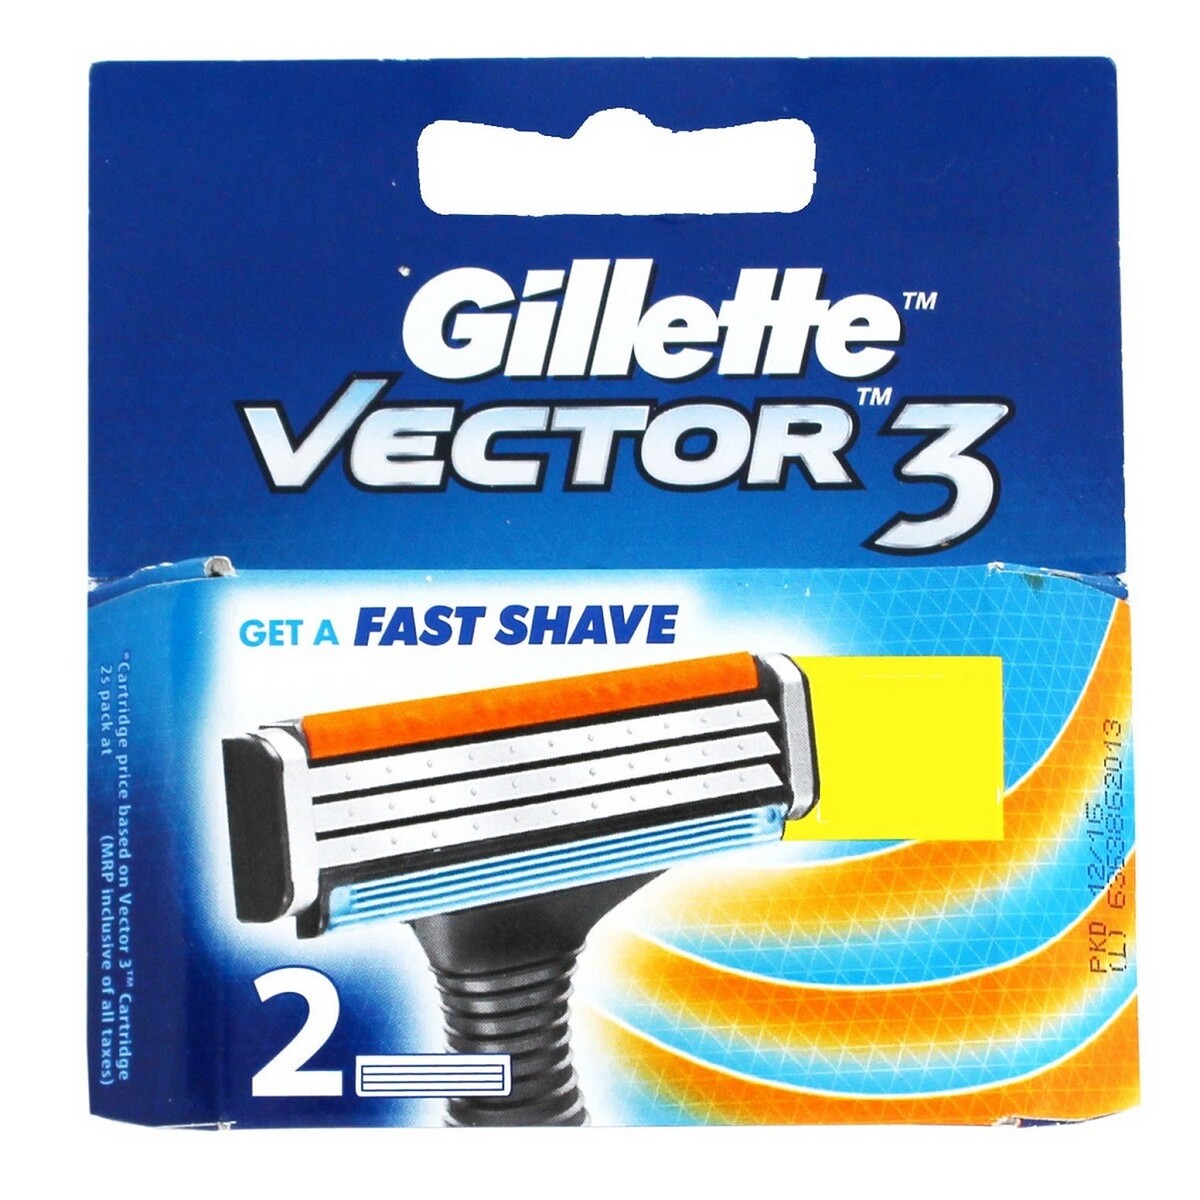 Gillette Cartridge Vector 2's